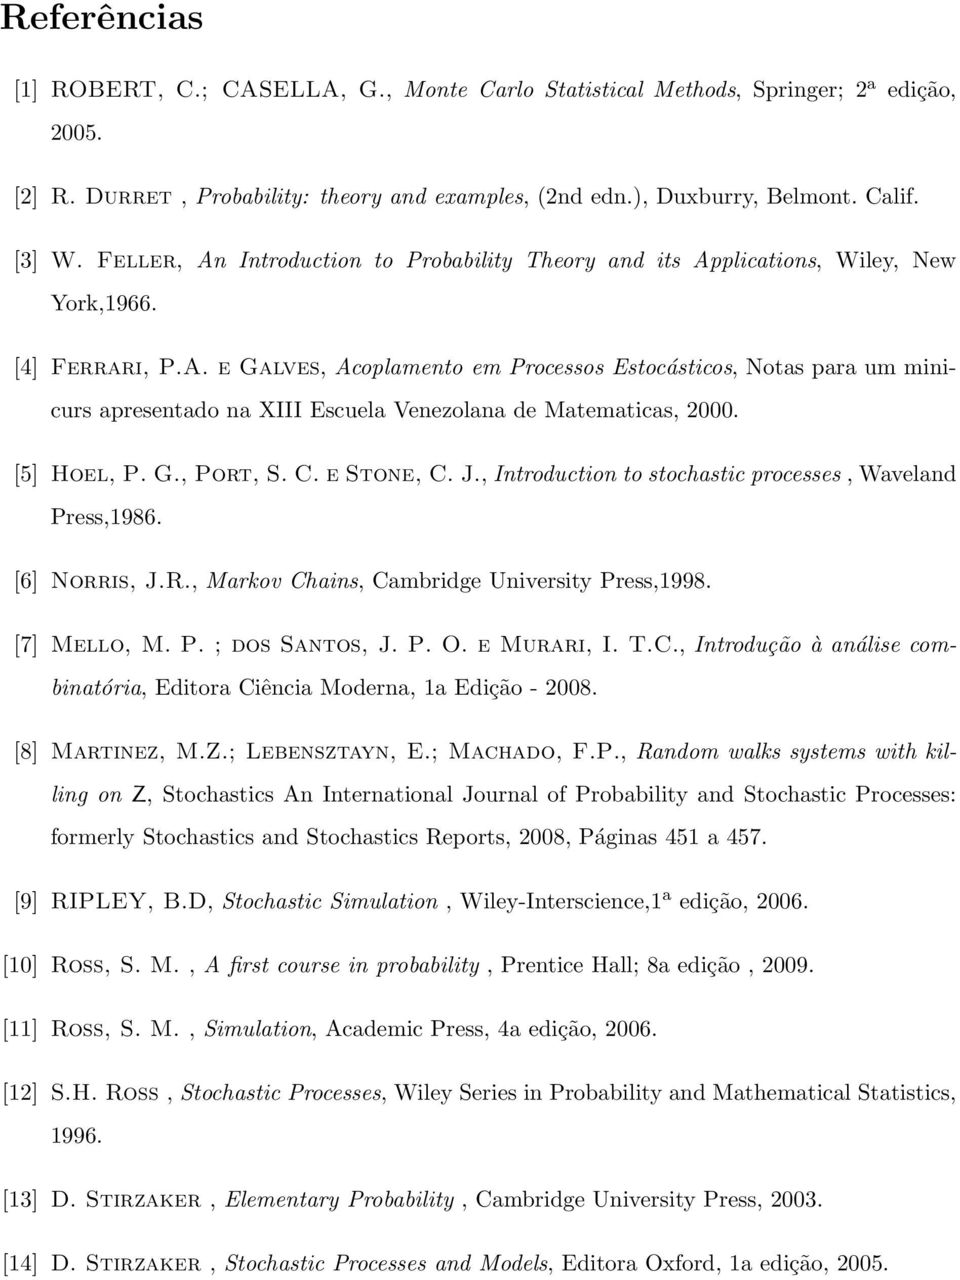 [5] Hoel, P. G., Port, S. C. e Stone, C. J., Introduction to stochastic processes, Waveland Press,986. [6] Norris, J.R., Markov Chains, Cambridge University Press,998. [7] Mello, M. P. ; dos Santos, J.